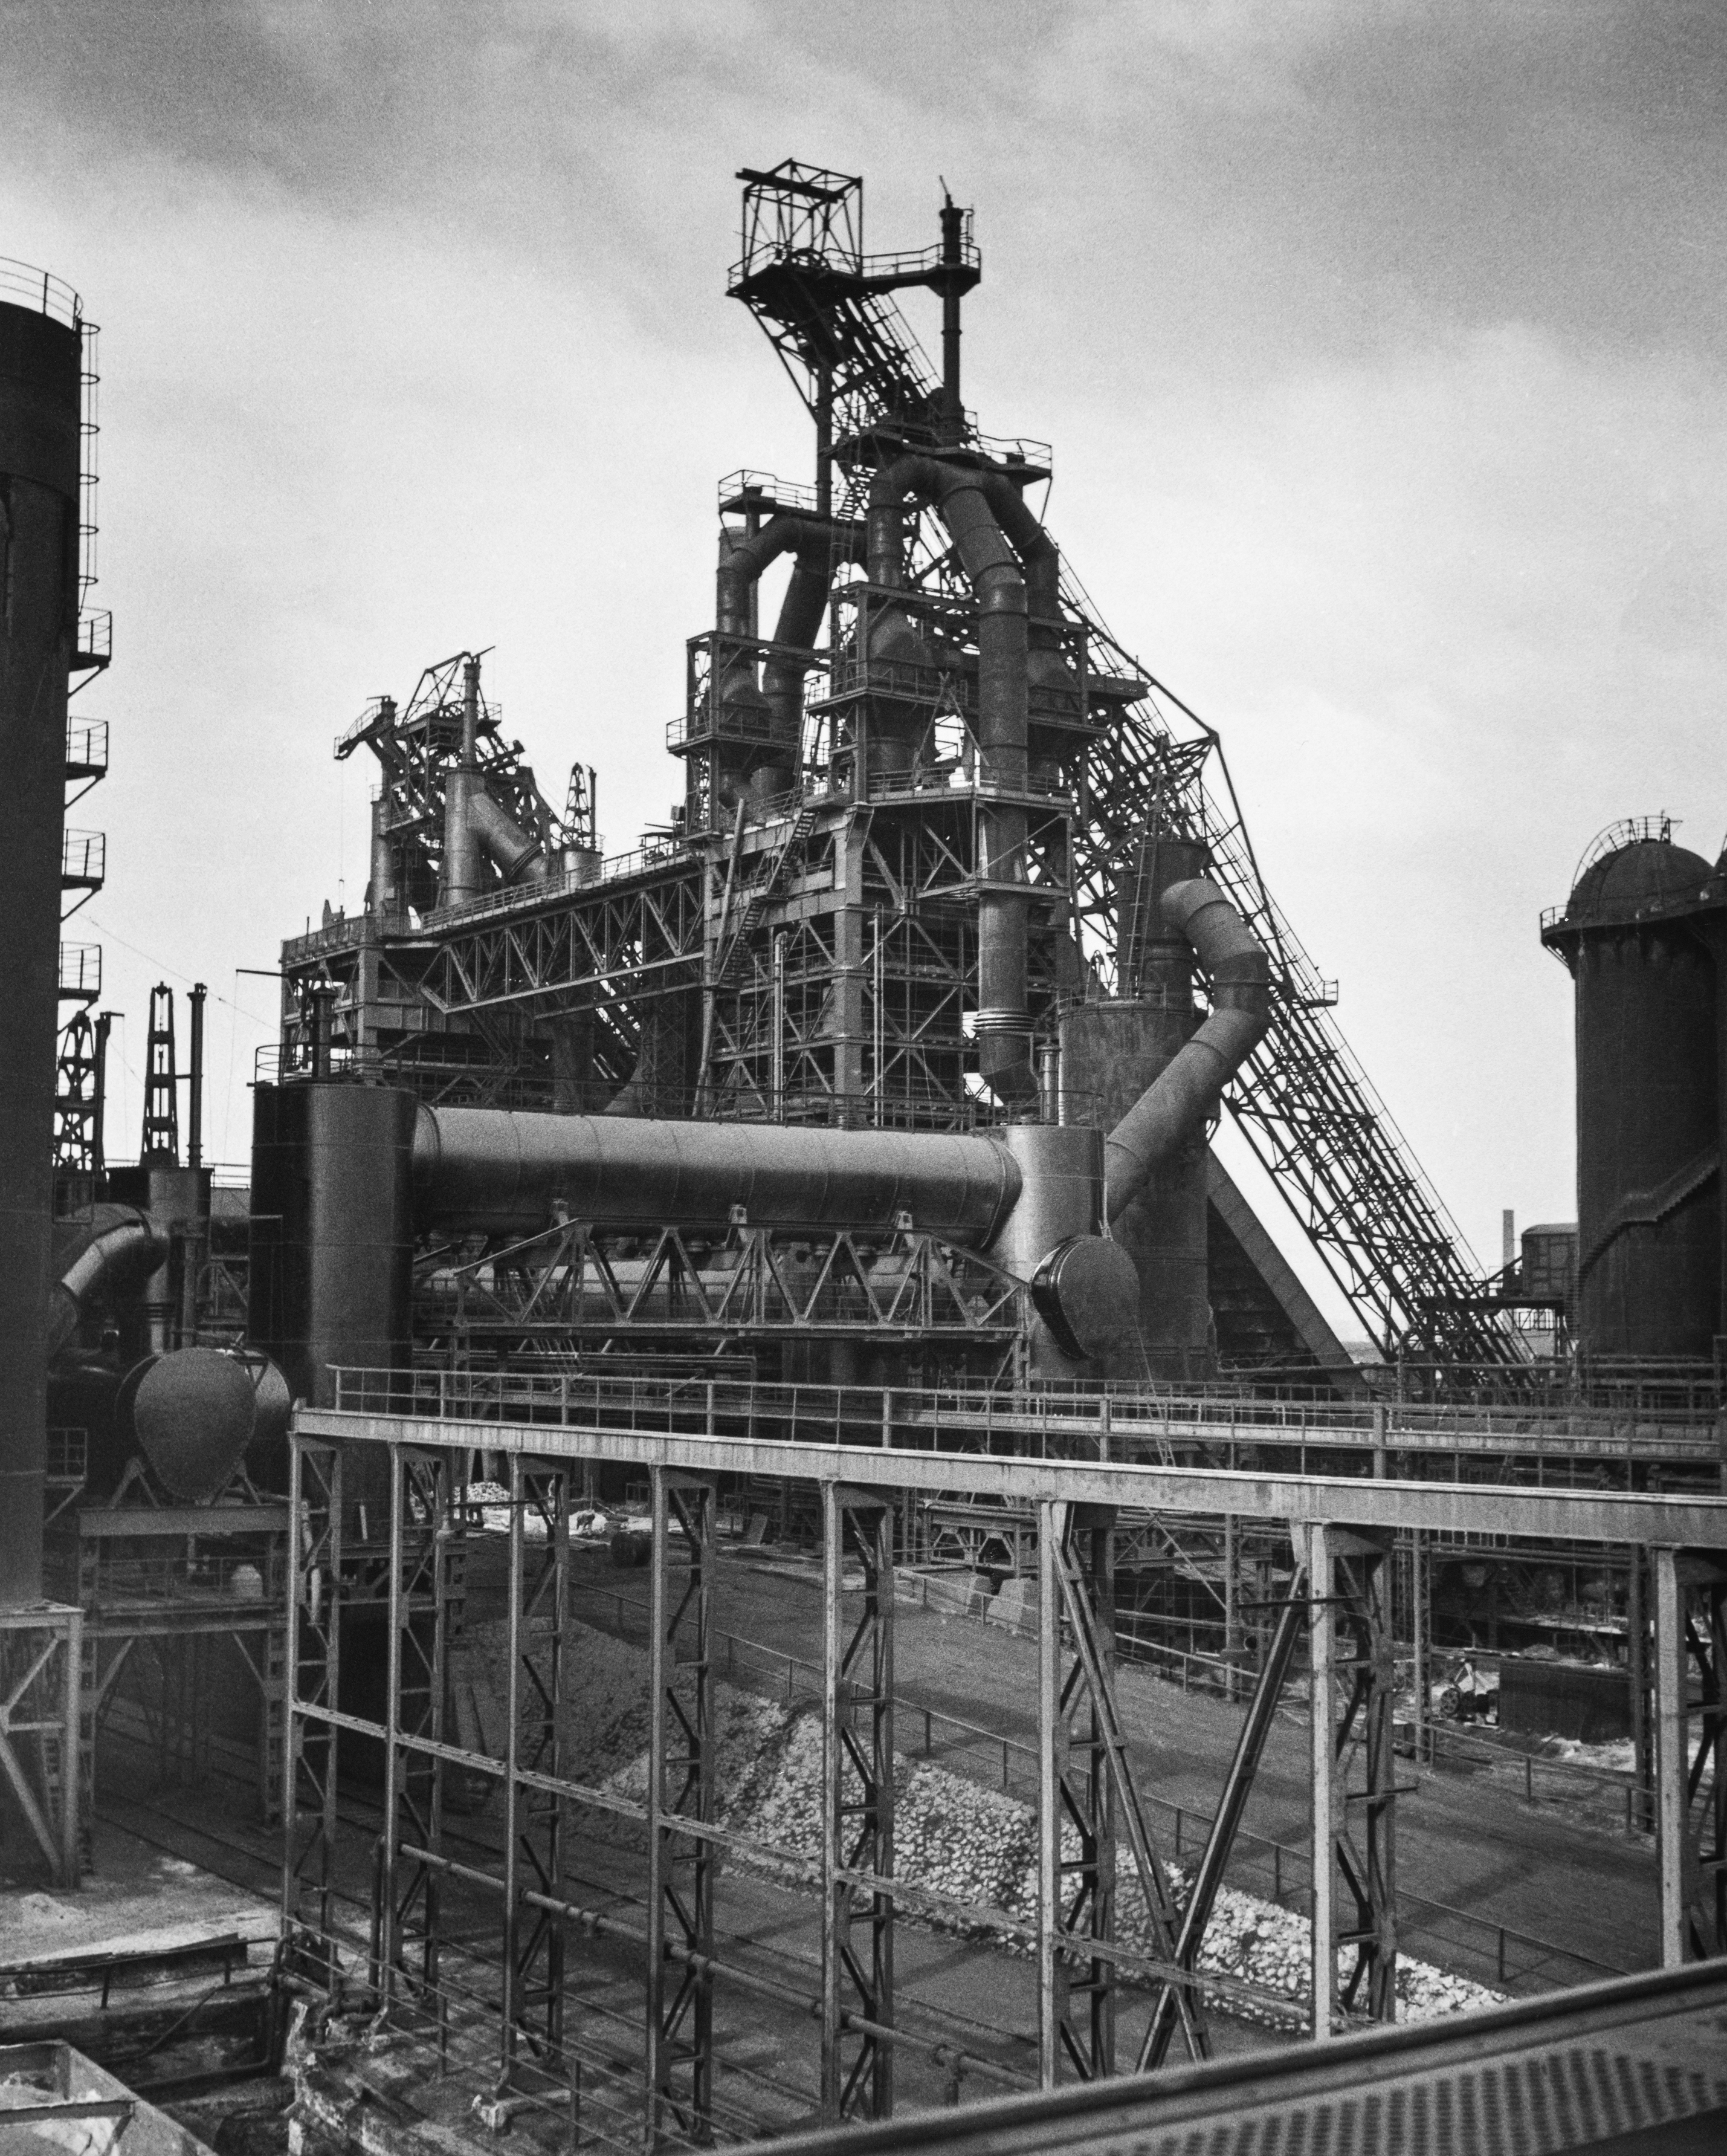 Industrieanlage in schwarz-weiß fotografiert